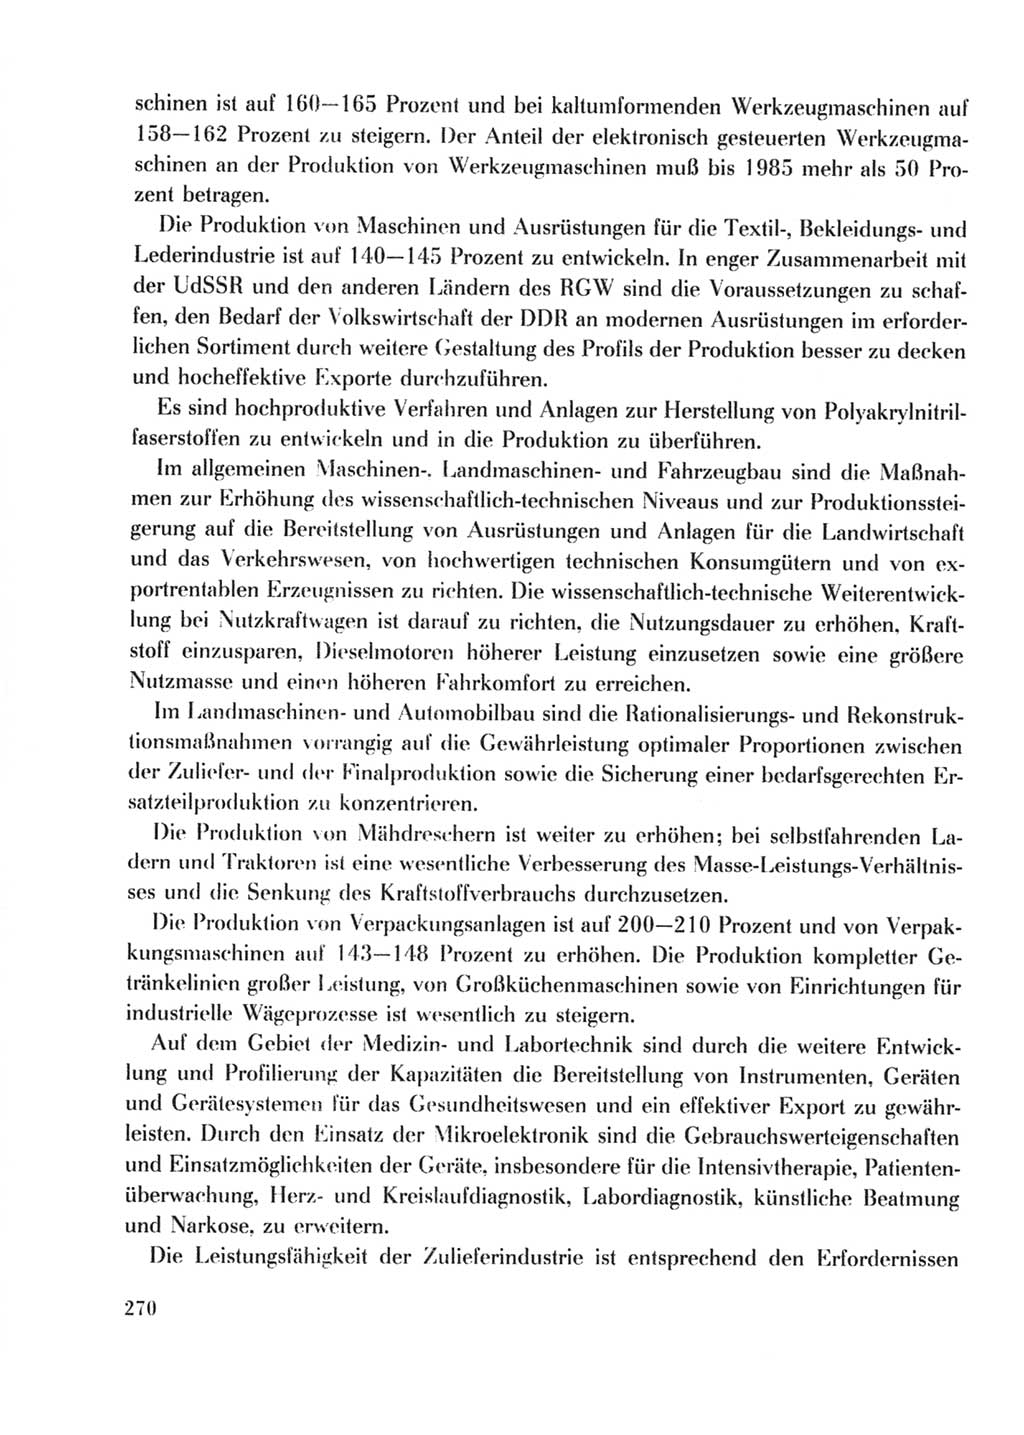 Protokoll der Verhandlungen des Ⅹ. Parteitages der Sozialistischen Einheitspartei Deutschlands (SED) [Deutsche Demokratische Republik (DDR)] 1981, Band 2, Seite 270 (Prot. Verh. Ⅹ. PT SED DDR 1981, Bd. 2, S. 270)